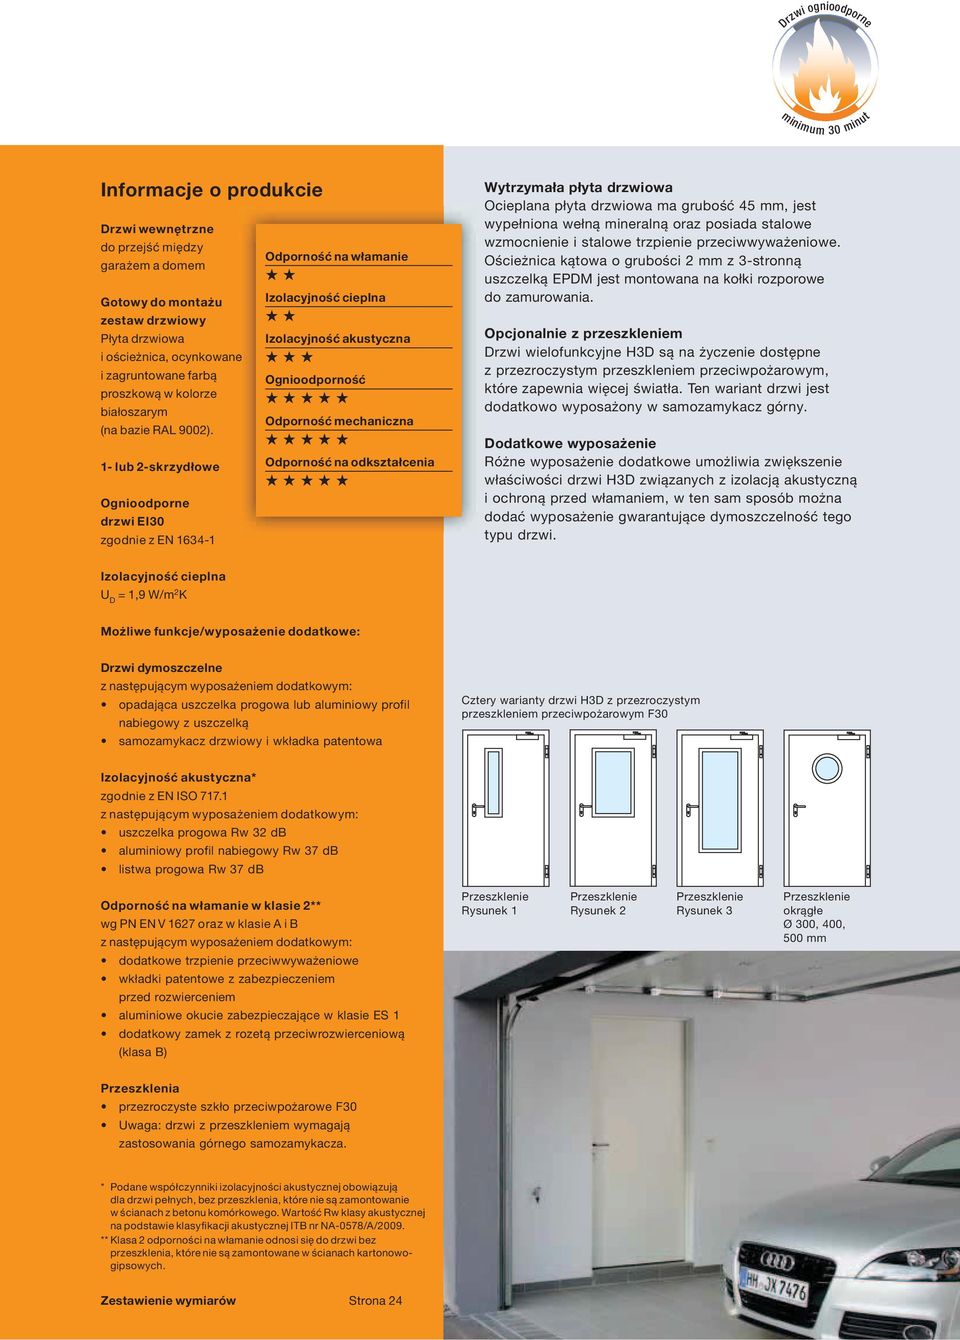 1- lub 2-skrzydłowe Ognioodporne drzwi EI30 zgodnie z EN 1634-1 Odporność na włamanie Izolacyjność akustyczna Ognioodporność Odporność mechaniczna Odporność na odkształcenia Wytrzymała płyta drzwiowa